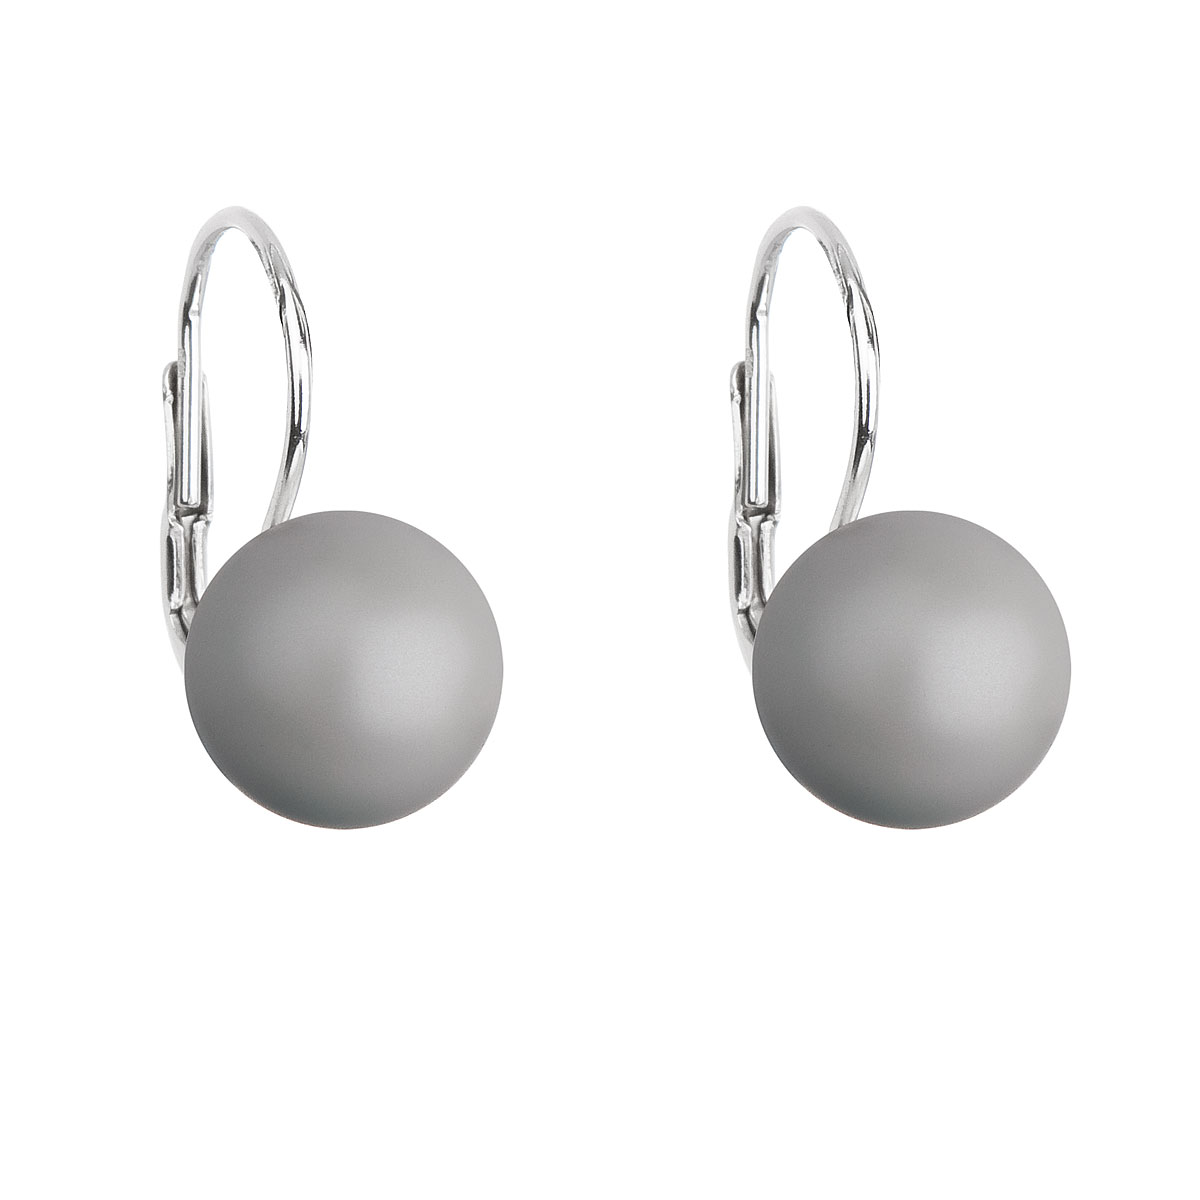 Evolution Group Stříbrné náušnice visací s perlou Swarovski šedé kulaté 31143.3 pastel grey